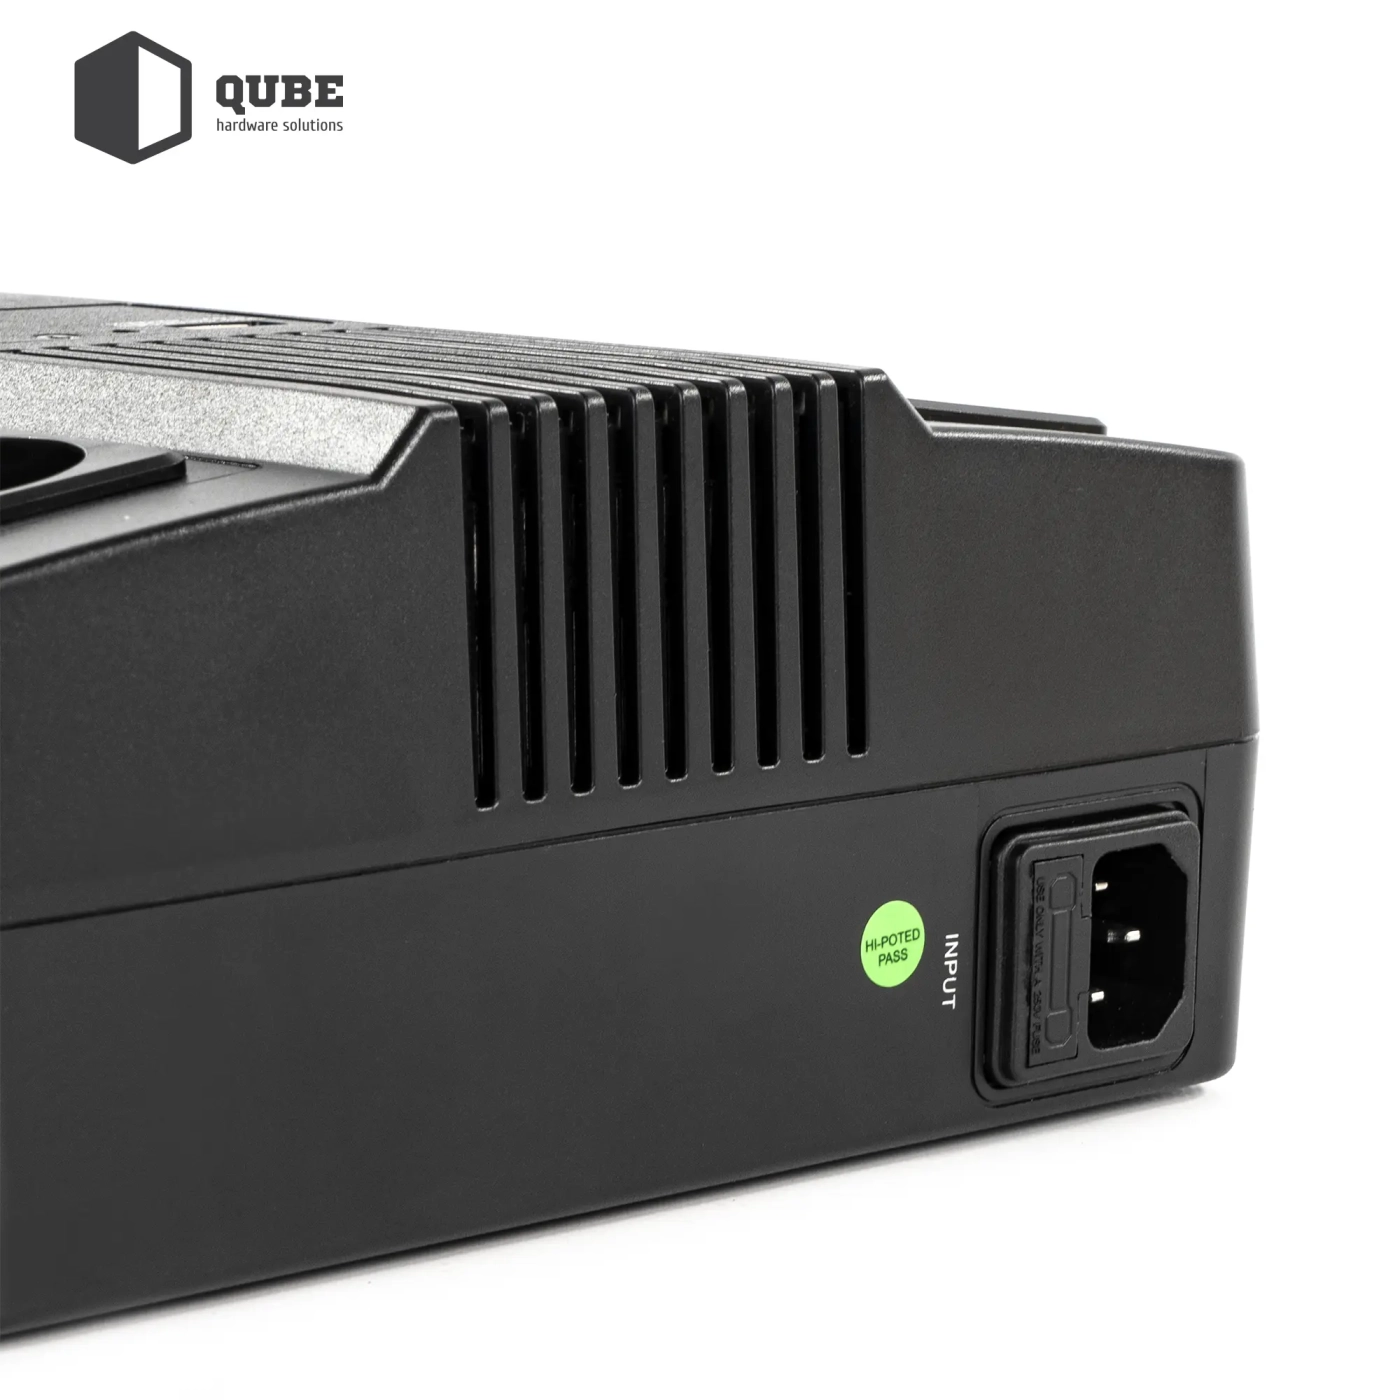 Купить ИБП (UPS) линейно-интерактивный Qube AIO 850, 850VA/480W, LCD, 6 x Schuko, RJ-45, USB - фото 8